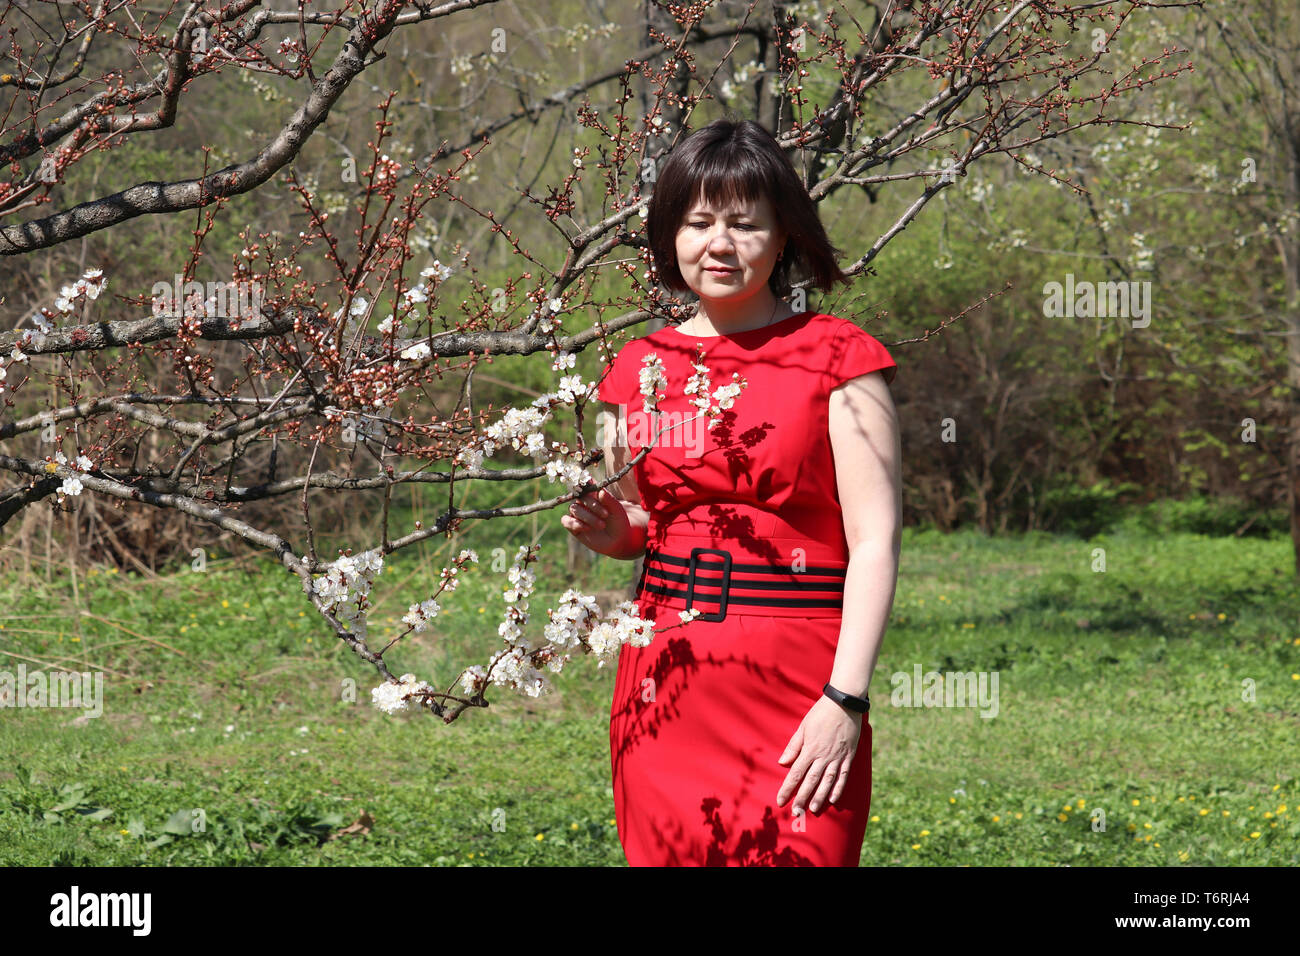 Die Kirschblüte im Frühling Garten. Glückliche Frau im roten Kleid steht in der Nähe der Kirschbaum und Gerüche der Blumen Stockfoto